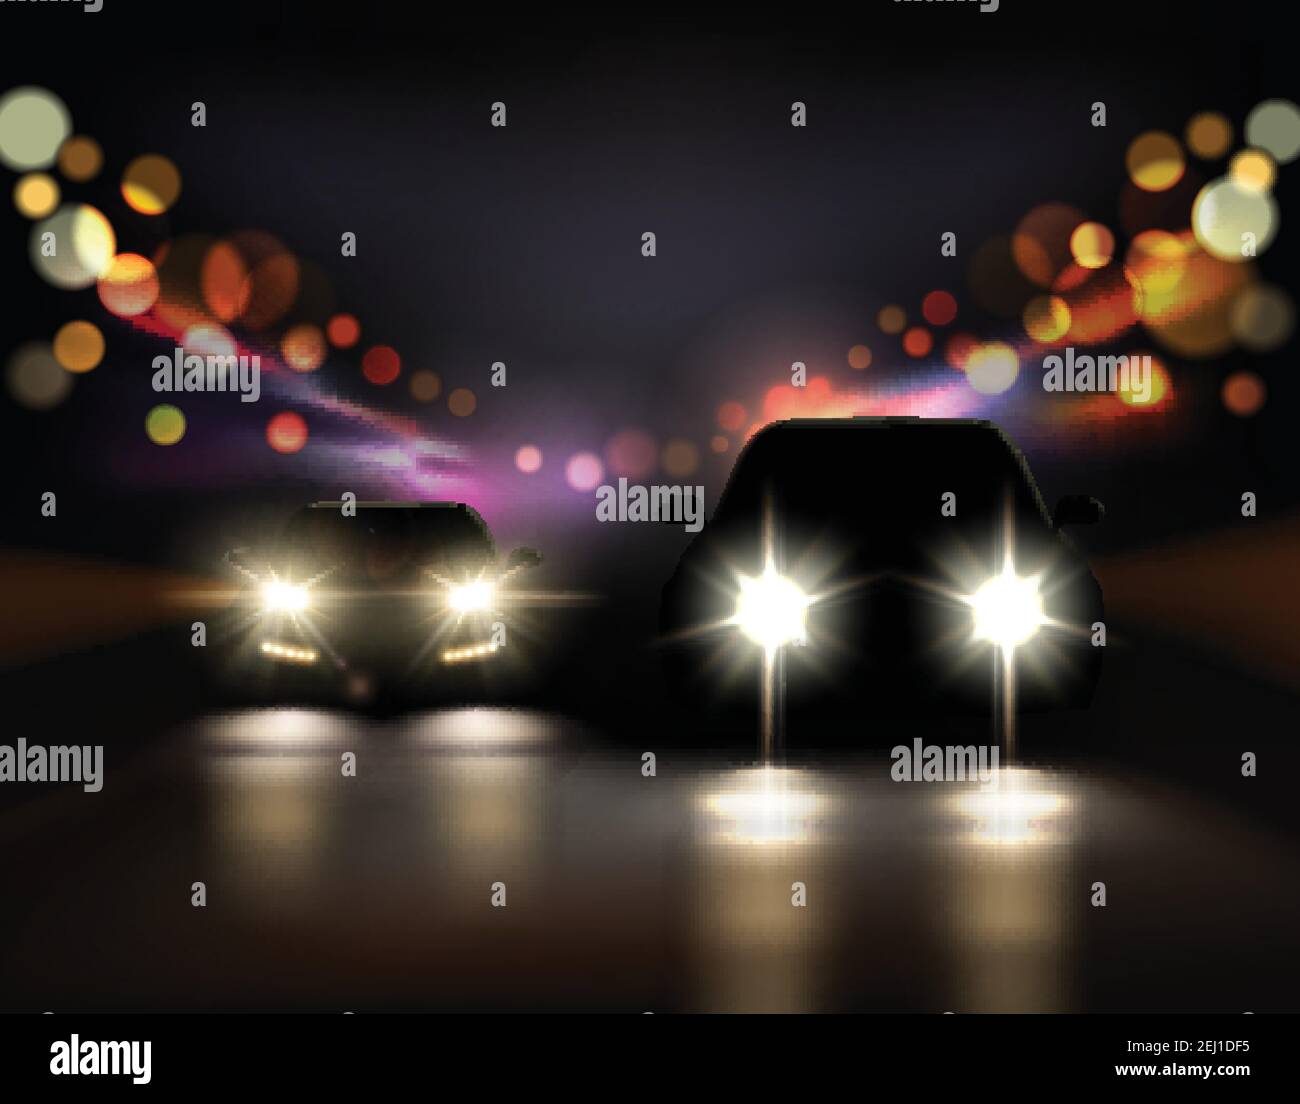 https://c8.alamy.com/compde/2ej1df5/auto-lichter-realistische-hintergrund-mit-nachtstrasse-und-zwei-auto-vordere-silhouetten-mit-scheinwerfer-und-schatten-vektor-illustration-2ej1df5.jpg